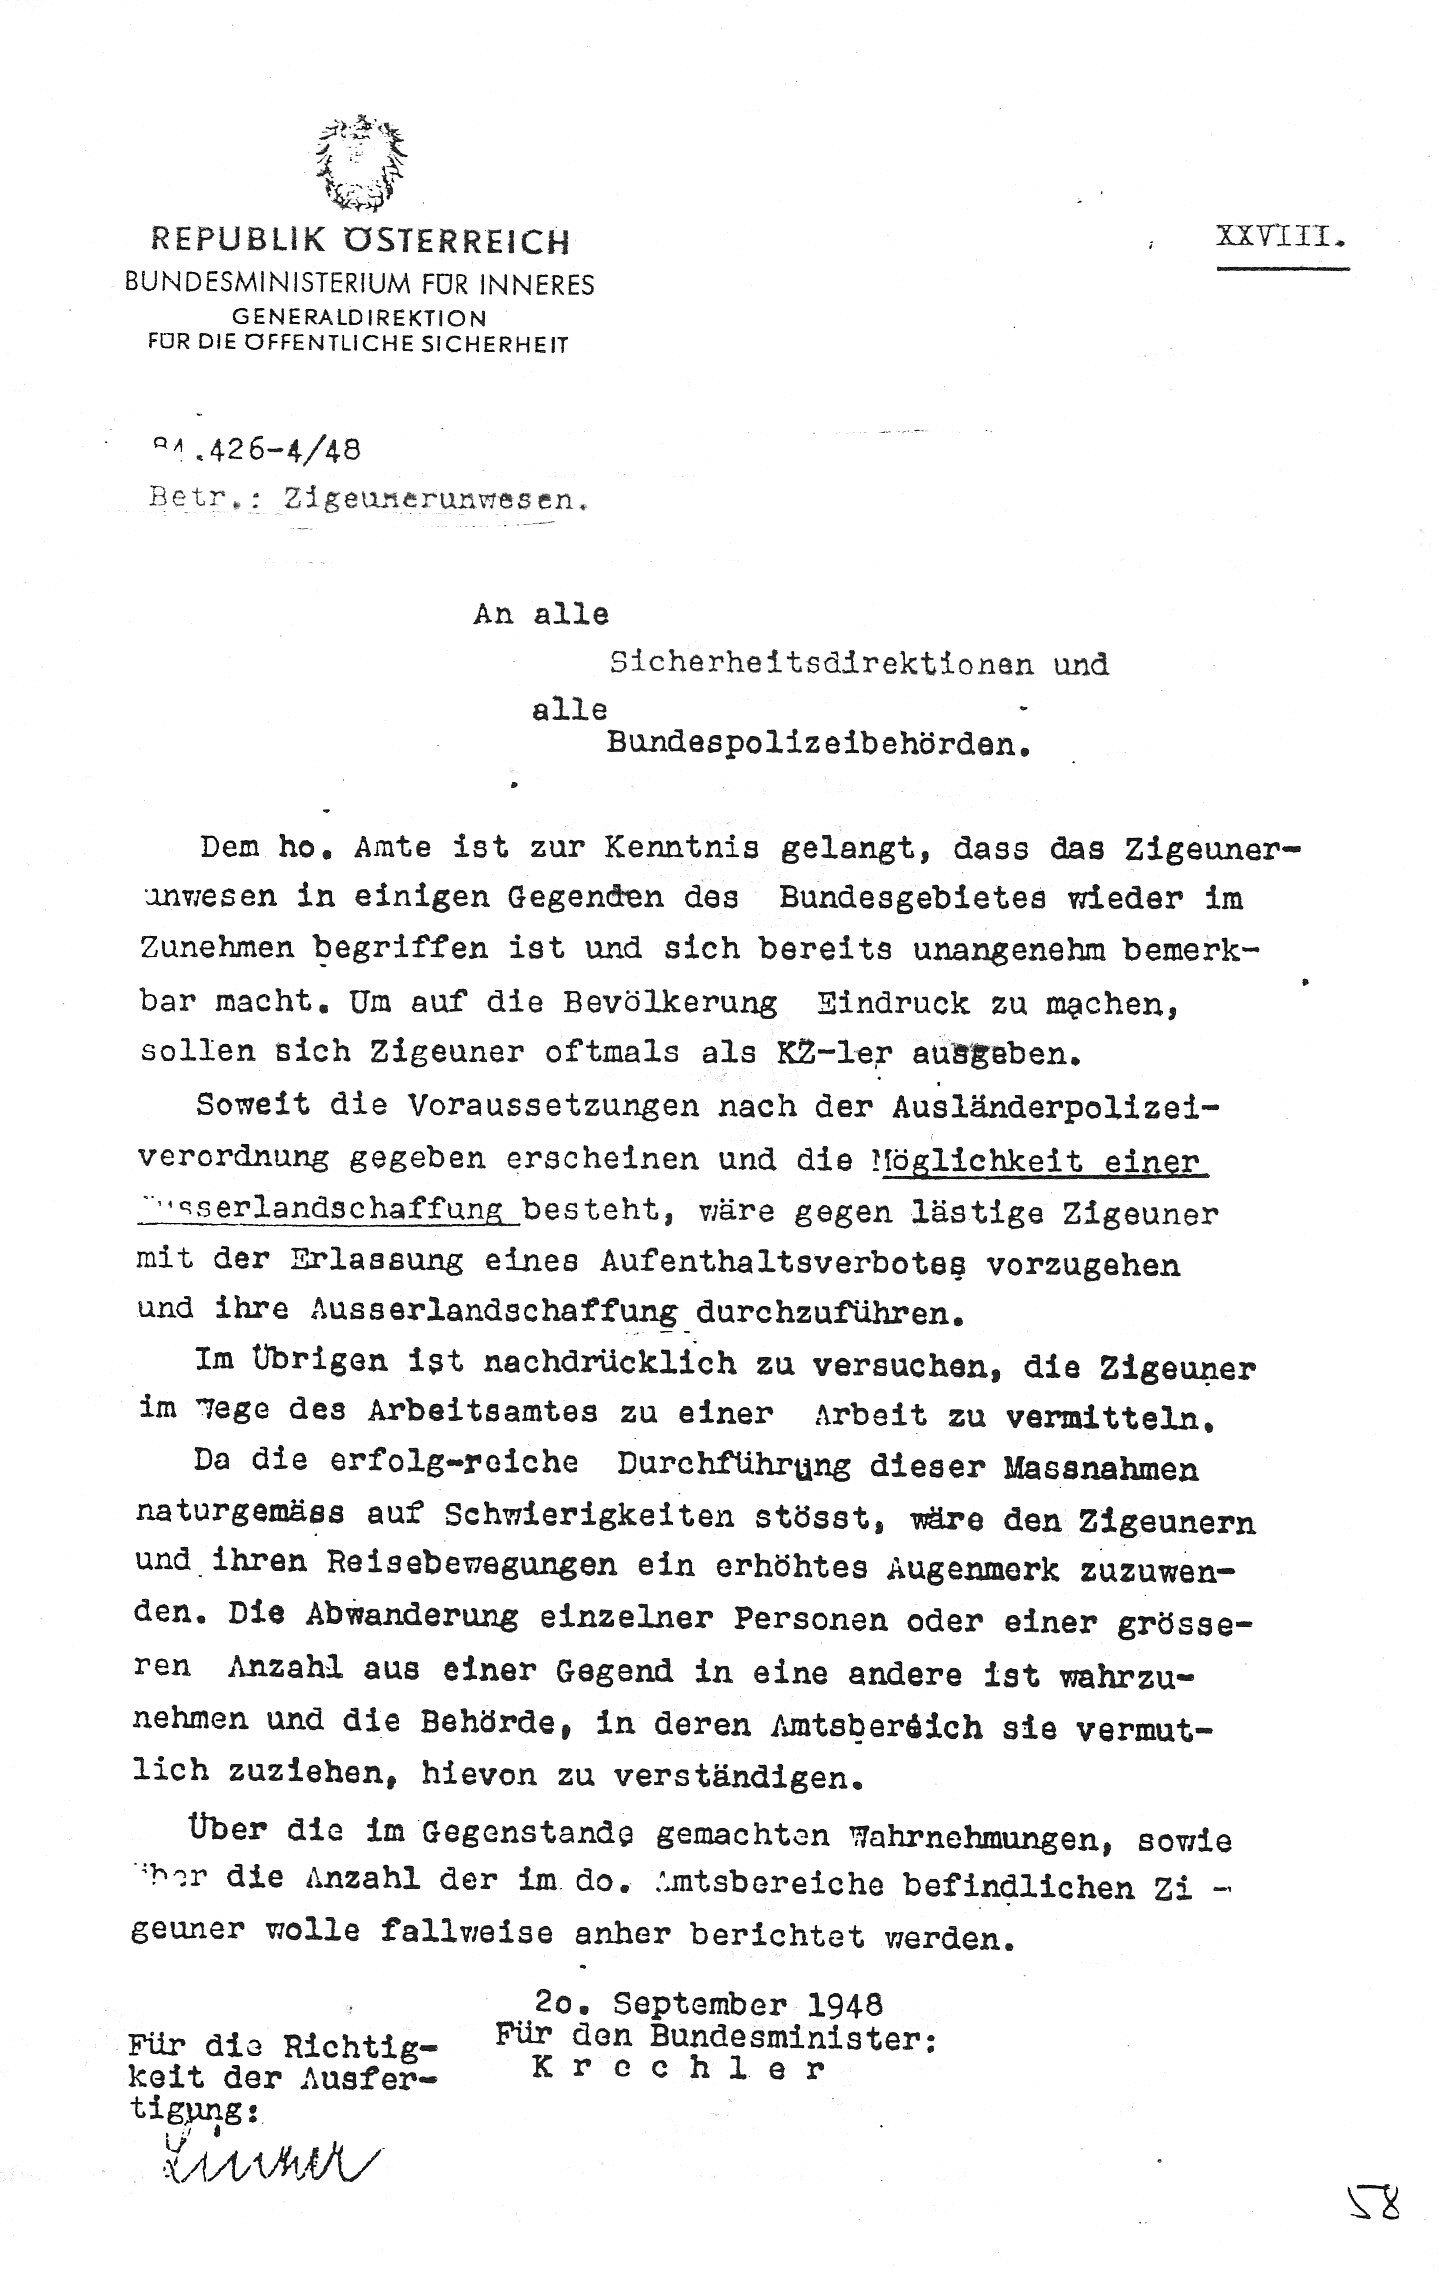 Schreiben des Bundesministeriums fÃ¼r Inneres an alle Sicherheitsdirektionen und BundespolizeibehÃ¶rden betreffend Â»ZigeunerunwesenÂ«, 20. September 1948